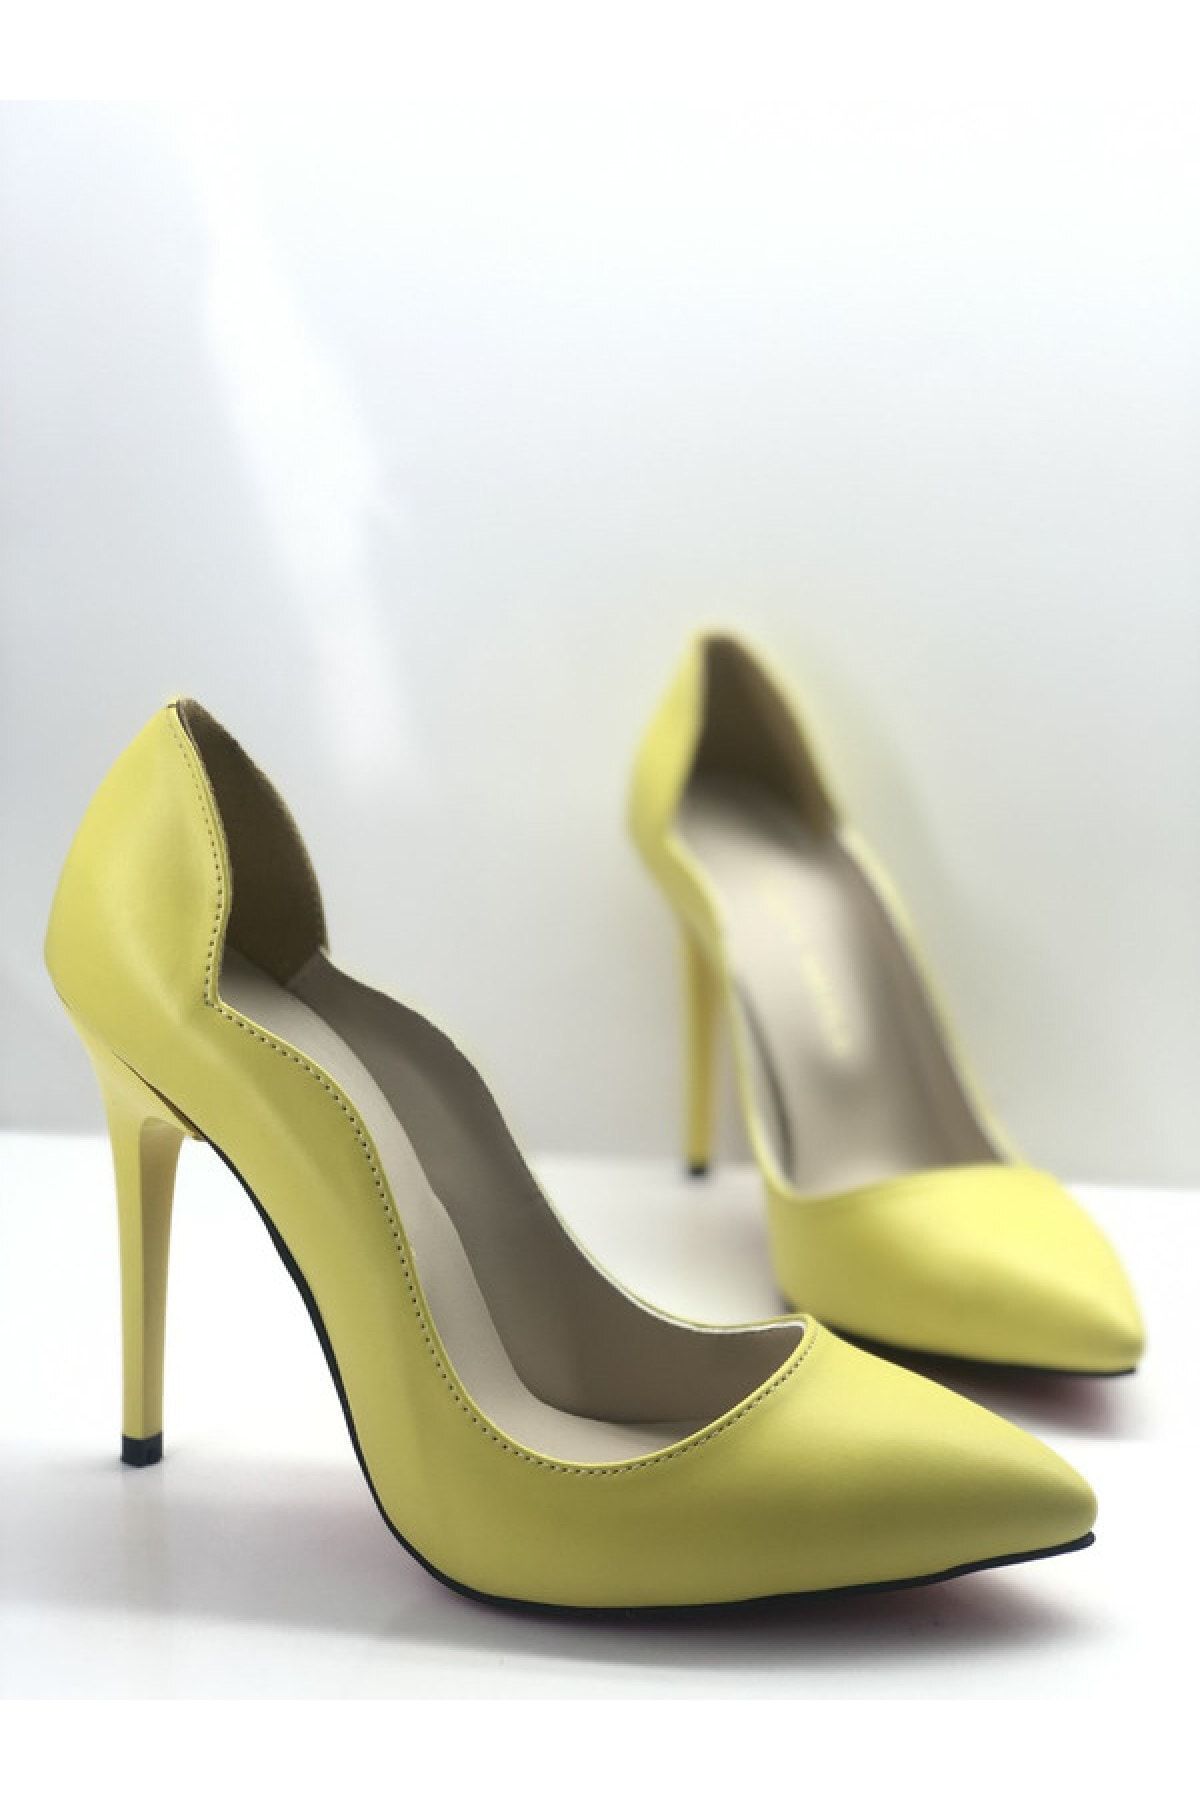 HAYYSHOES Kadın Sarı Stiletto Love Topuklu Ayakkabı